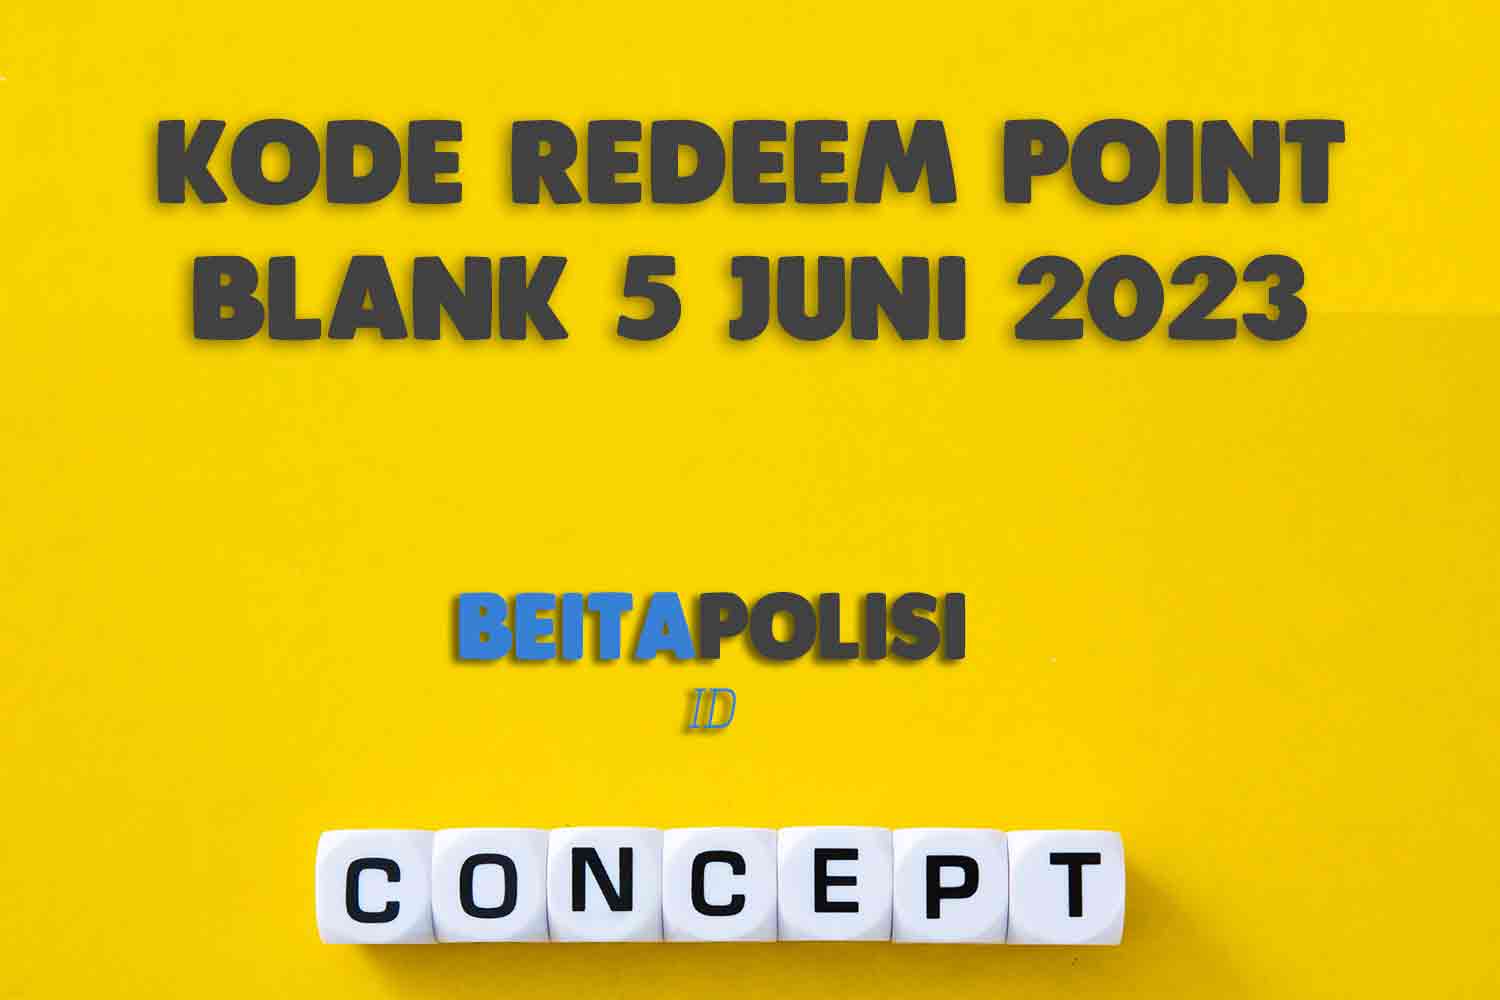 Kode Redeem Point Blank 5 Juni 2023 Terbaru